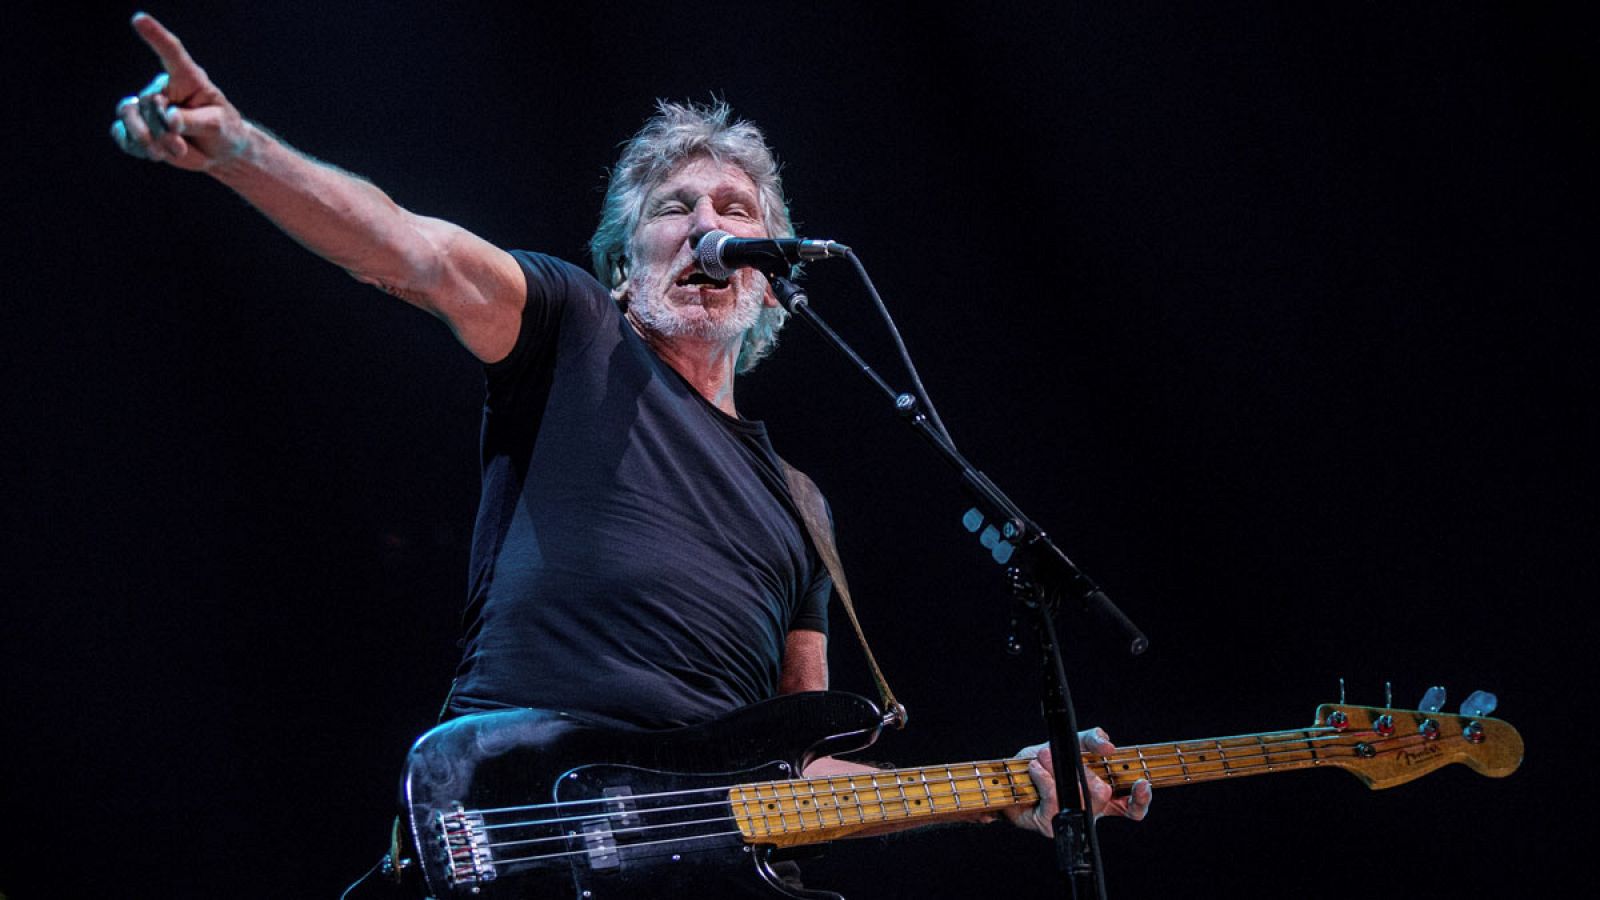 El exlíder de Pink Floyd, el bajista británico Roger Waters, iniciando el viernes 13 de abril de 2018 en Barcelona la gira europea de presentación de su último disco, "Is This the Life We Really Want?".